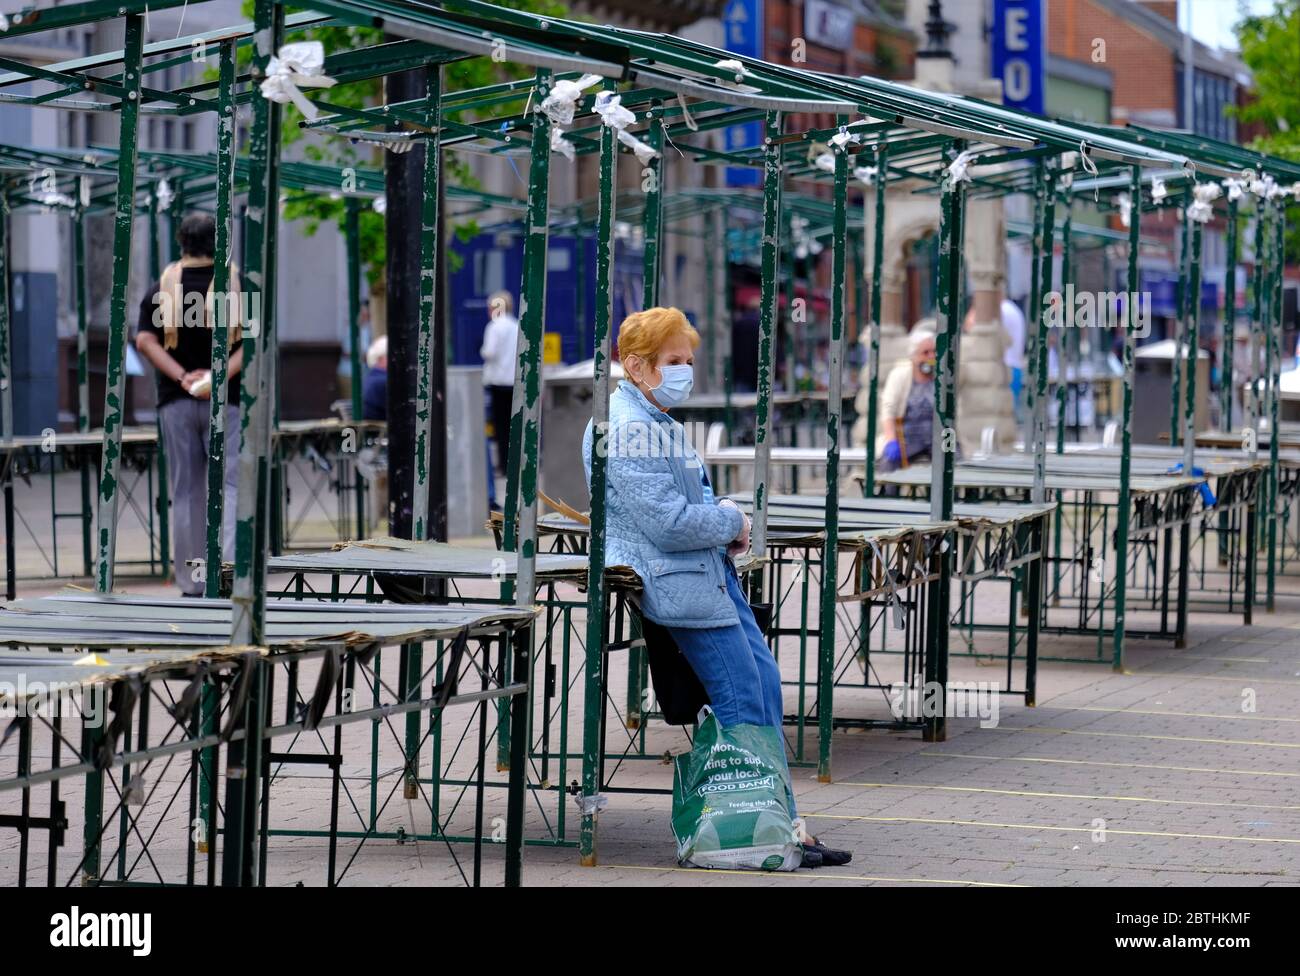 Loughborough, Leicestershire, Regno Unito. 26 maggio 2020. Una donna si riposa su uno stallo del mercato vuoto dopo che Boris Johnson ha annunciato i mercati all'aperto sarà in grado di riaprire in Inghilterra dal 1 ° giugno, durante il blocco pandemico coronavirus. Credit Darren Staples/Alamy Live News. Foto Stock